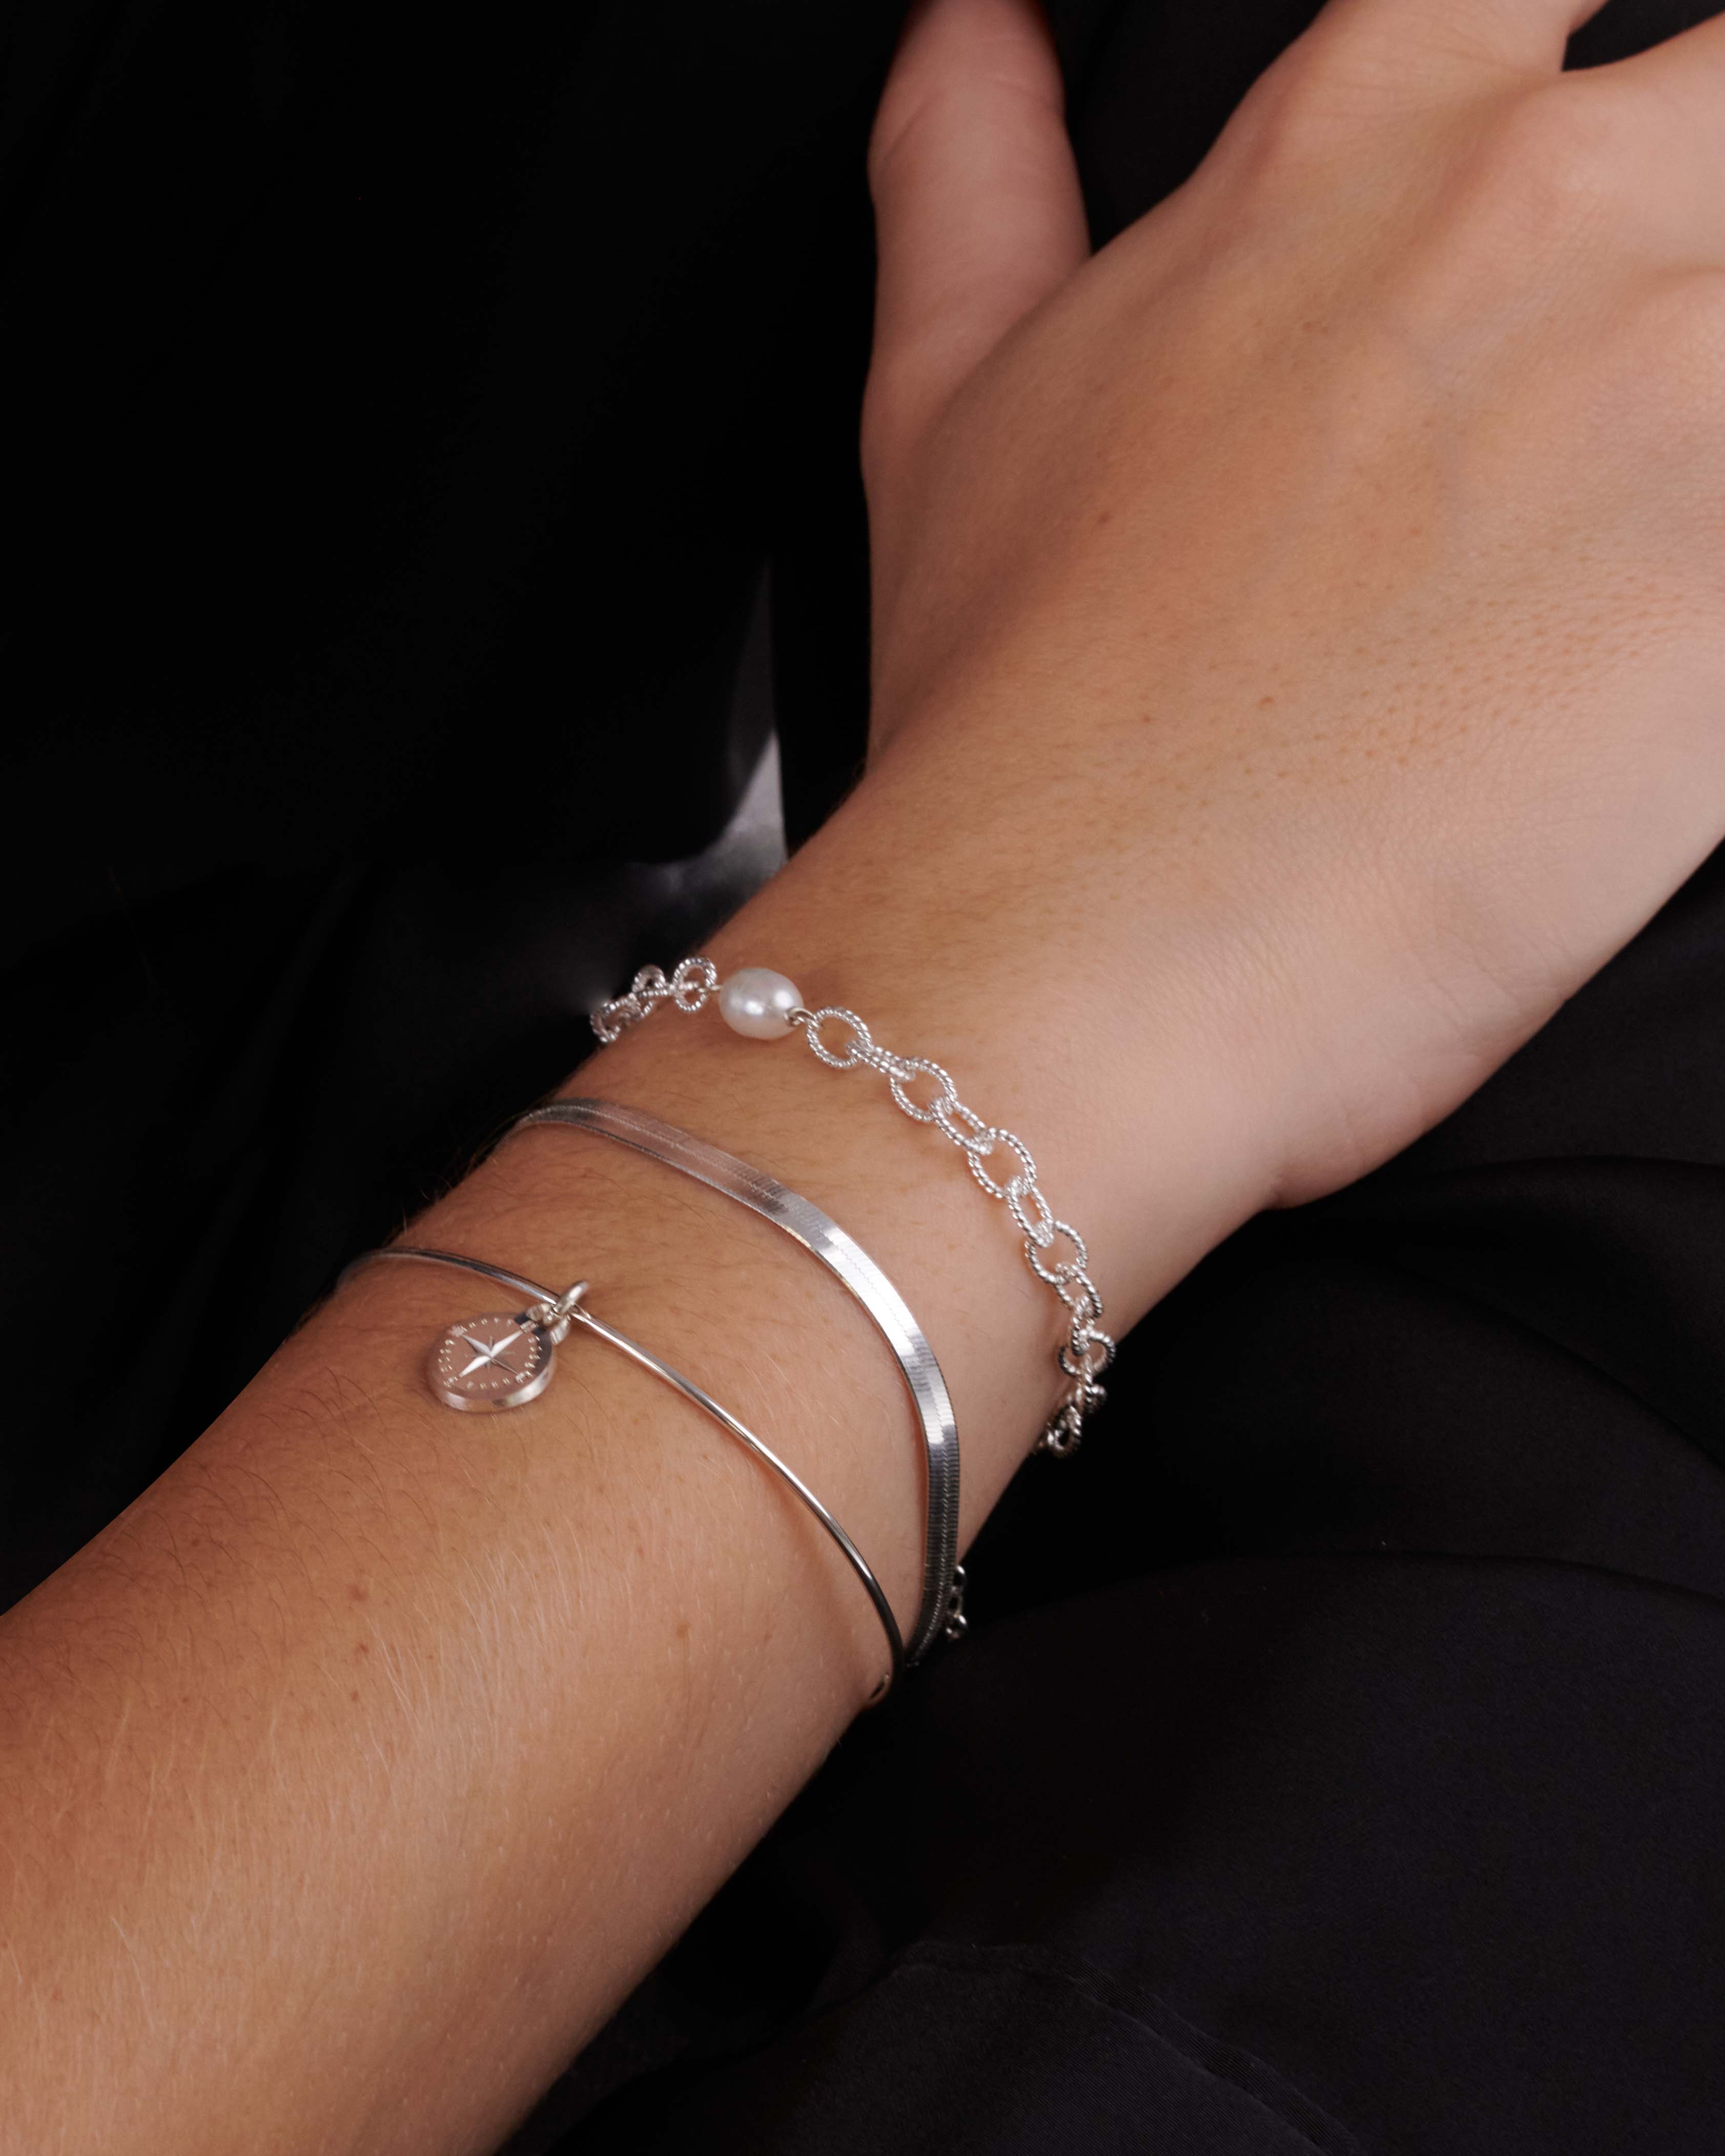 Association de bracelets éthiques en argent massif 925 composée d'un bracelet en chaîne ovale martelée avec une perle de culture ovale, d'un bracelet en chaîne plate, et d'un jonc fin avec un pendentif en rose des vents fabriqués en France.